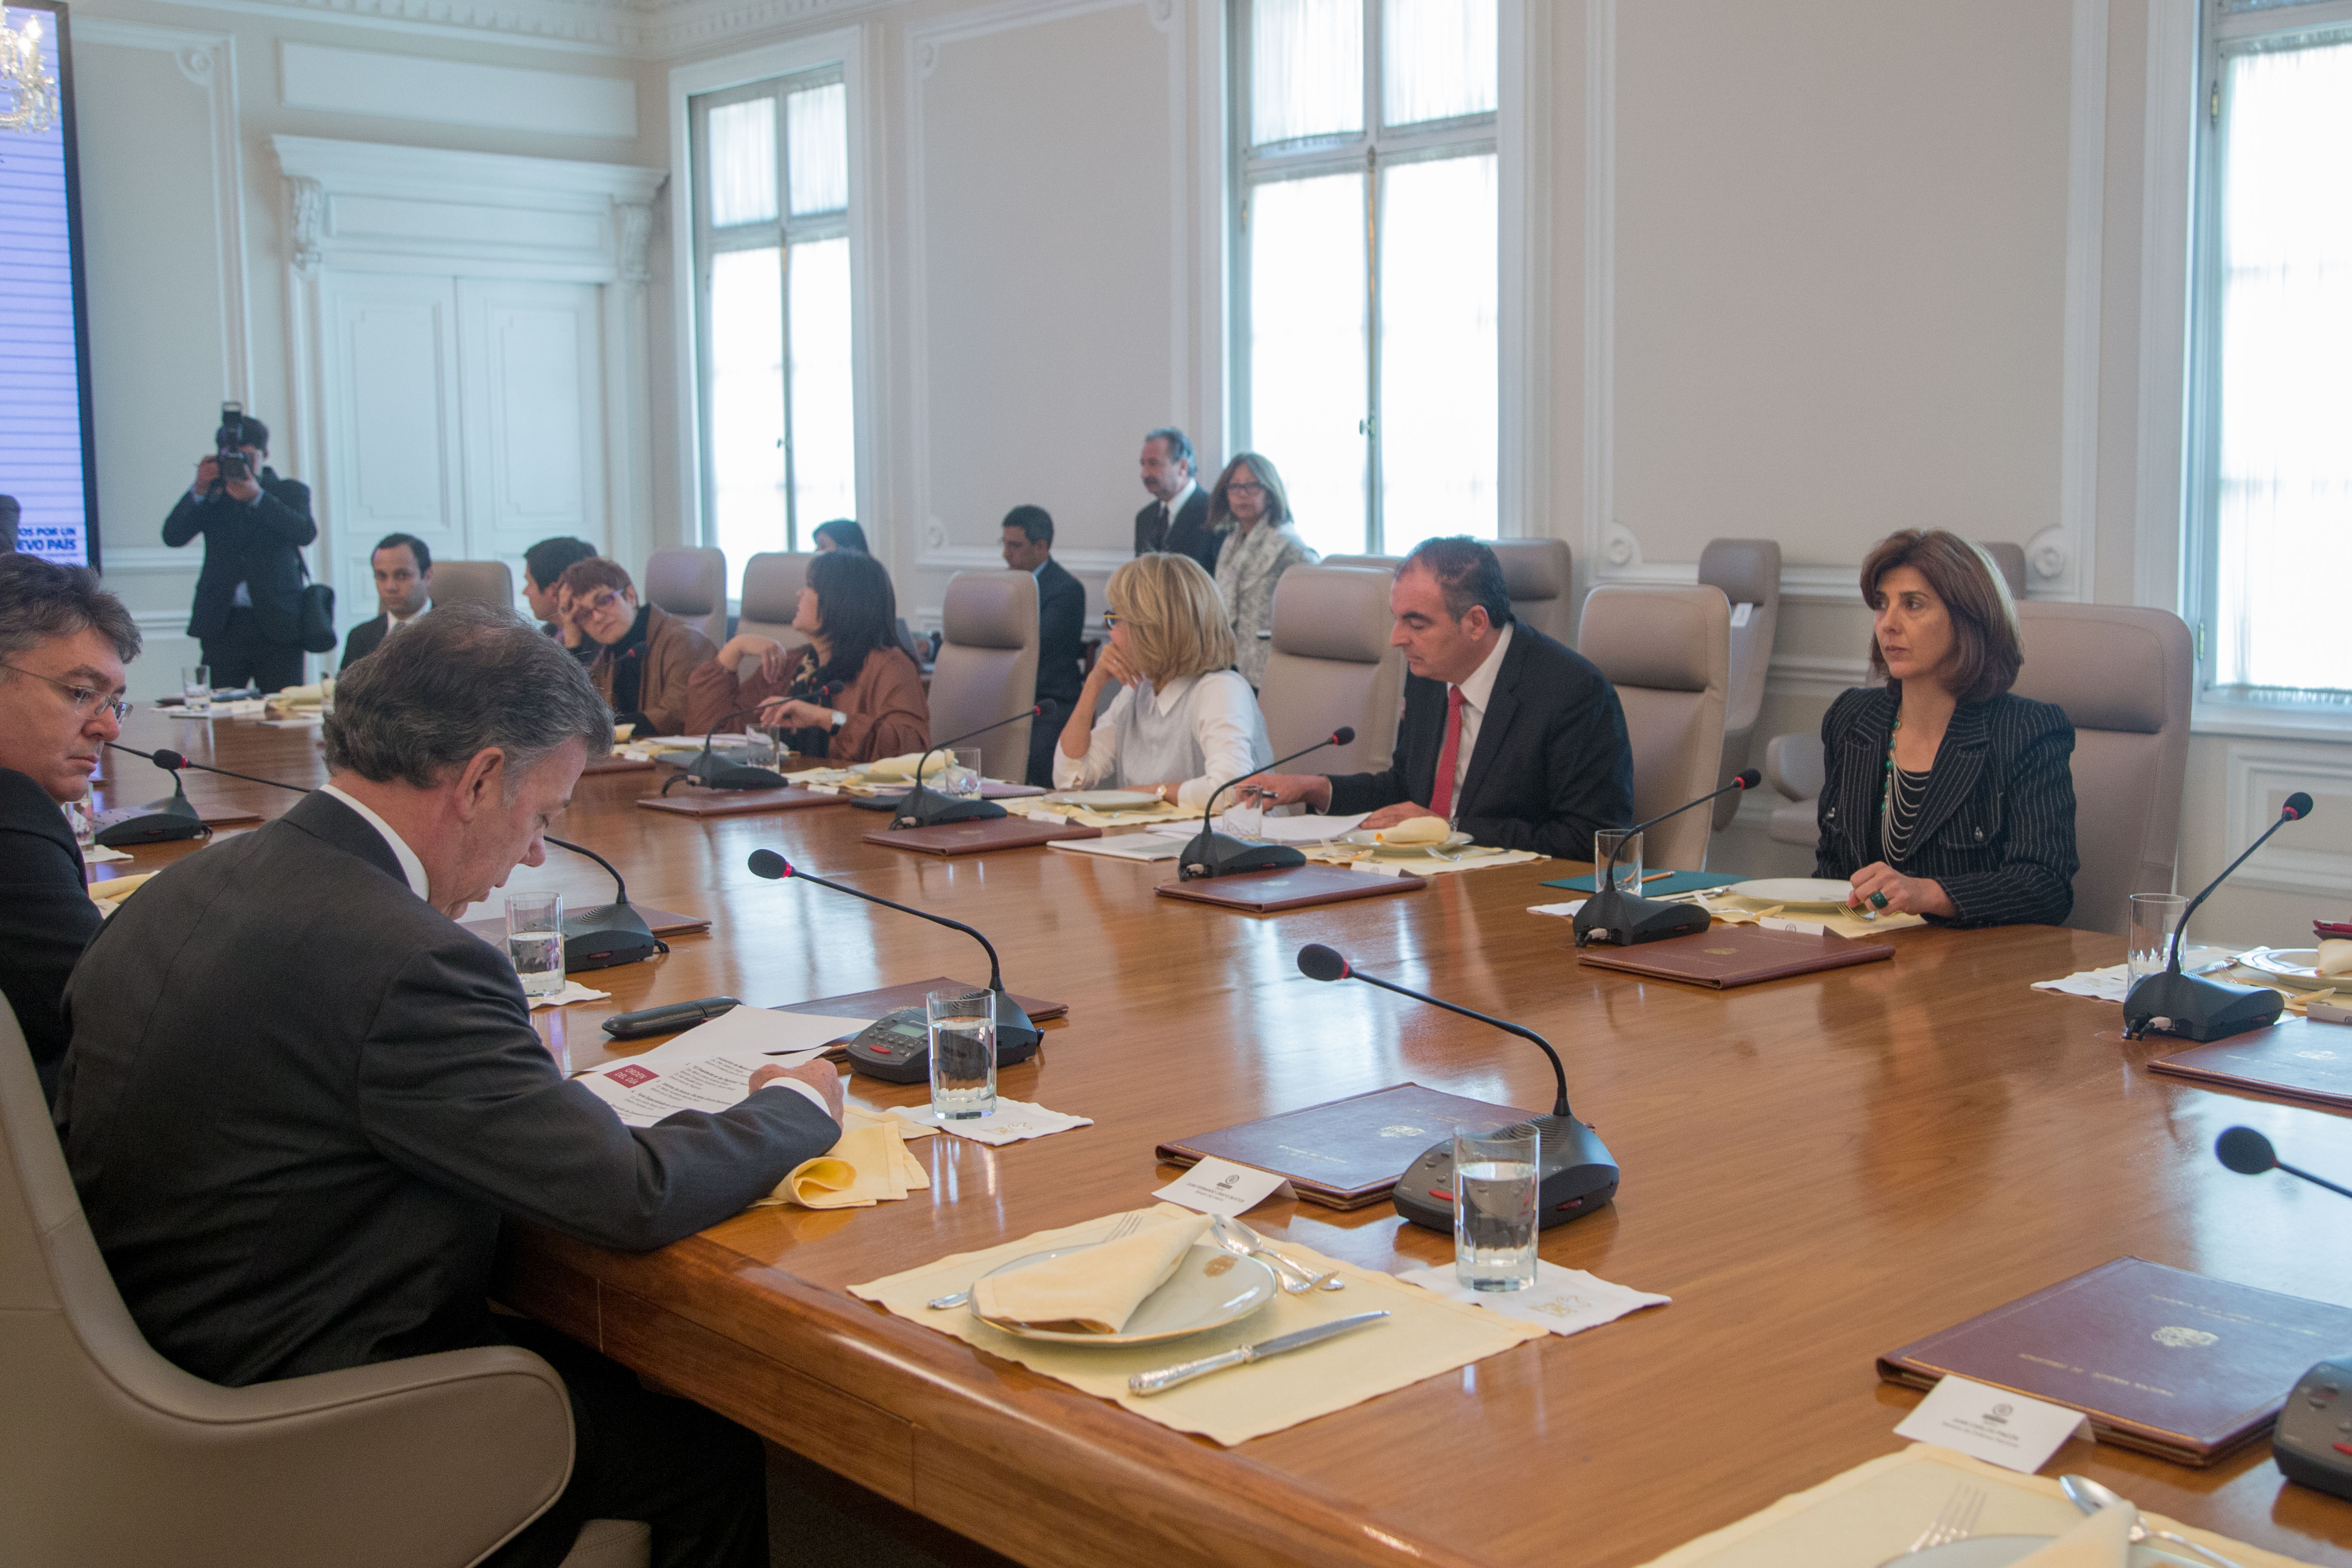 Canciller María Ángela Holguín participó en el Consejo de Ministros convocado por el Presidente Juan Manuel Santos